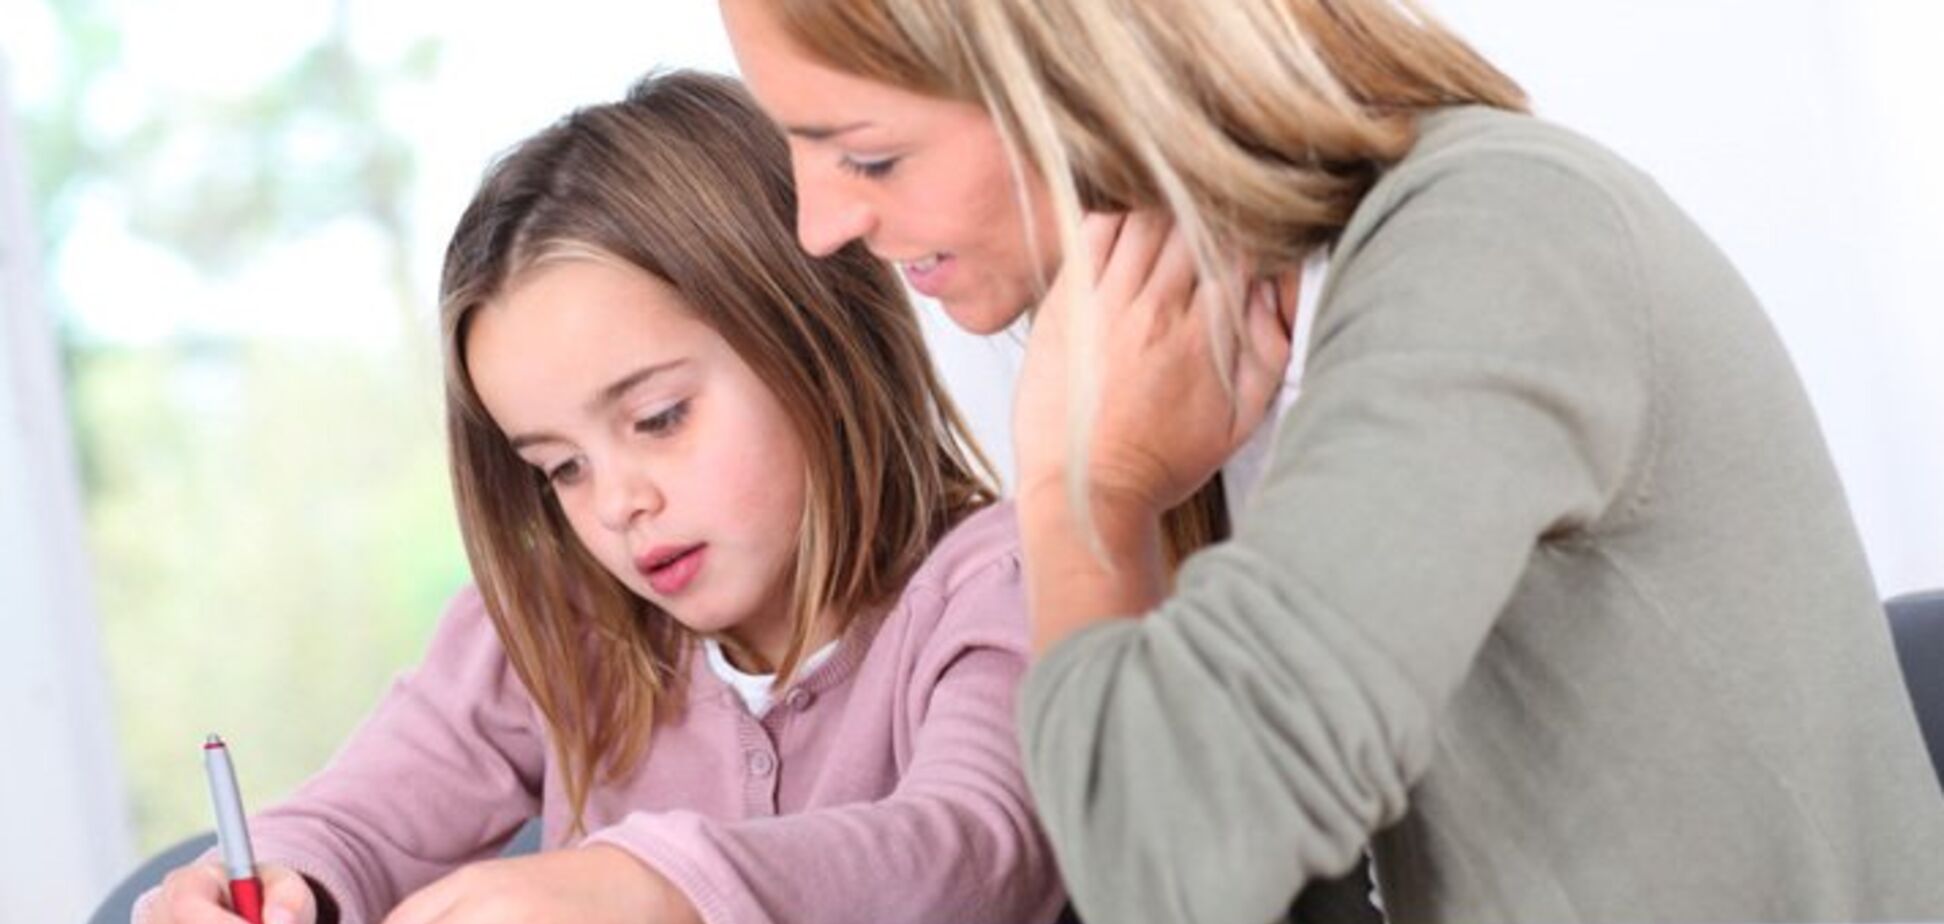 Як батьки можуть допомогти дитині у навчанні: поради